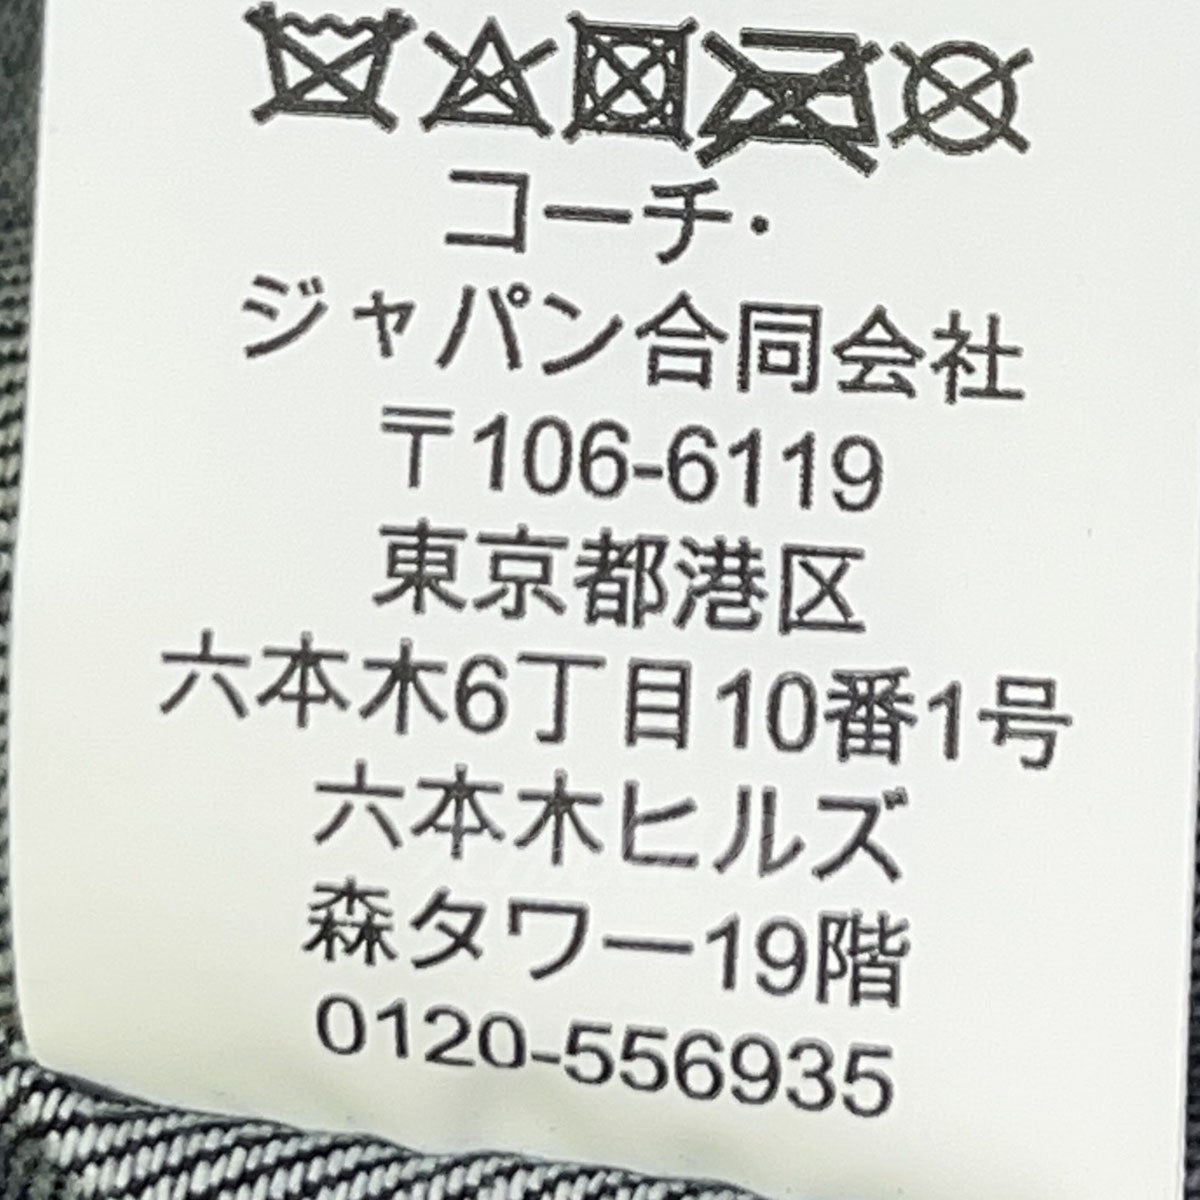 COACH コーチ ディズニー 新品タグ付 XS Sサイズ 58cm 【初回限定お ...